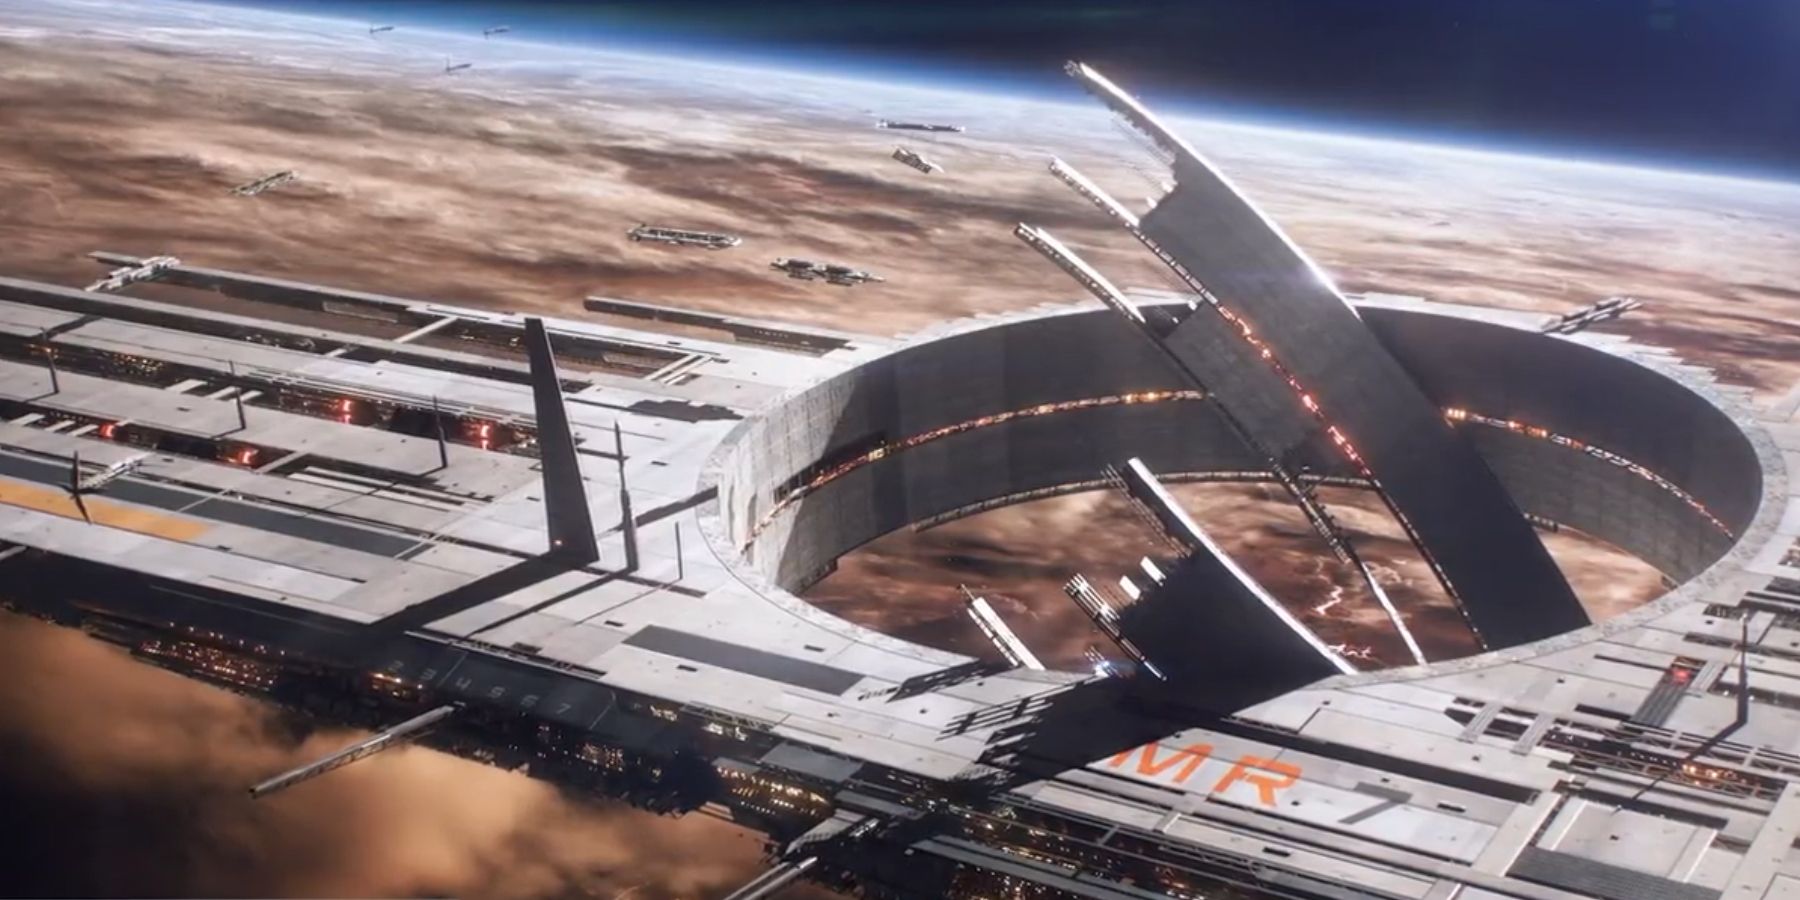 Mass Effect 4: Mass Relay Under Construction